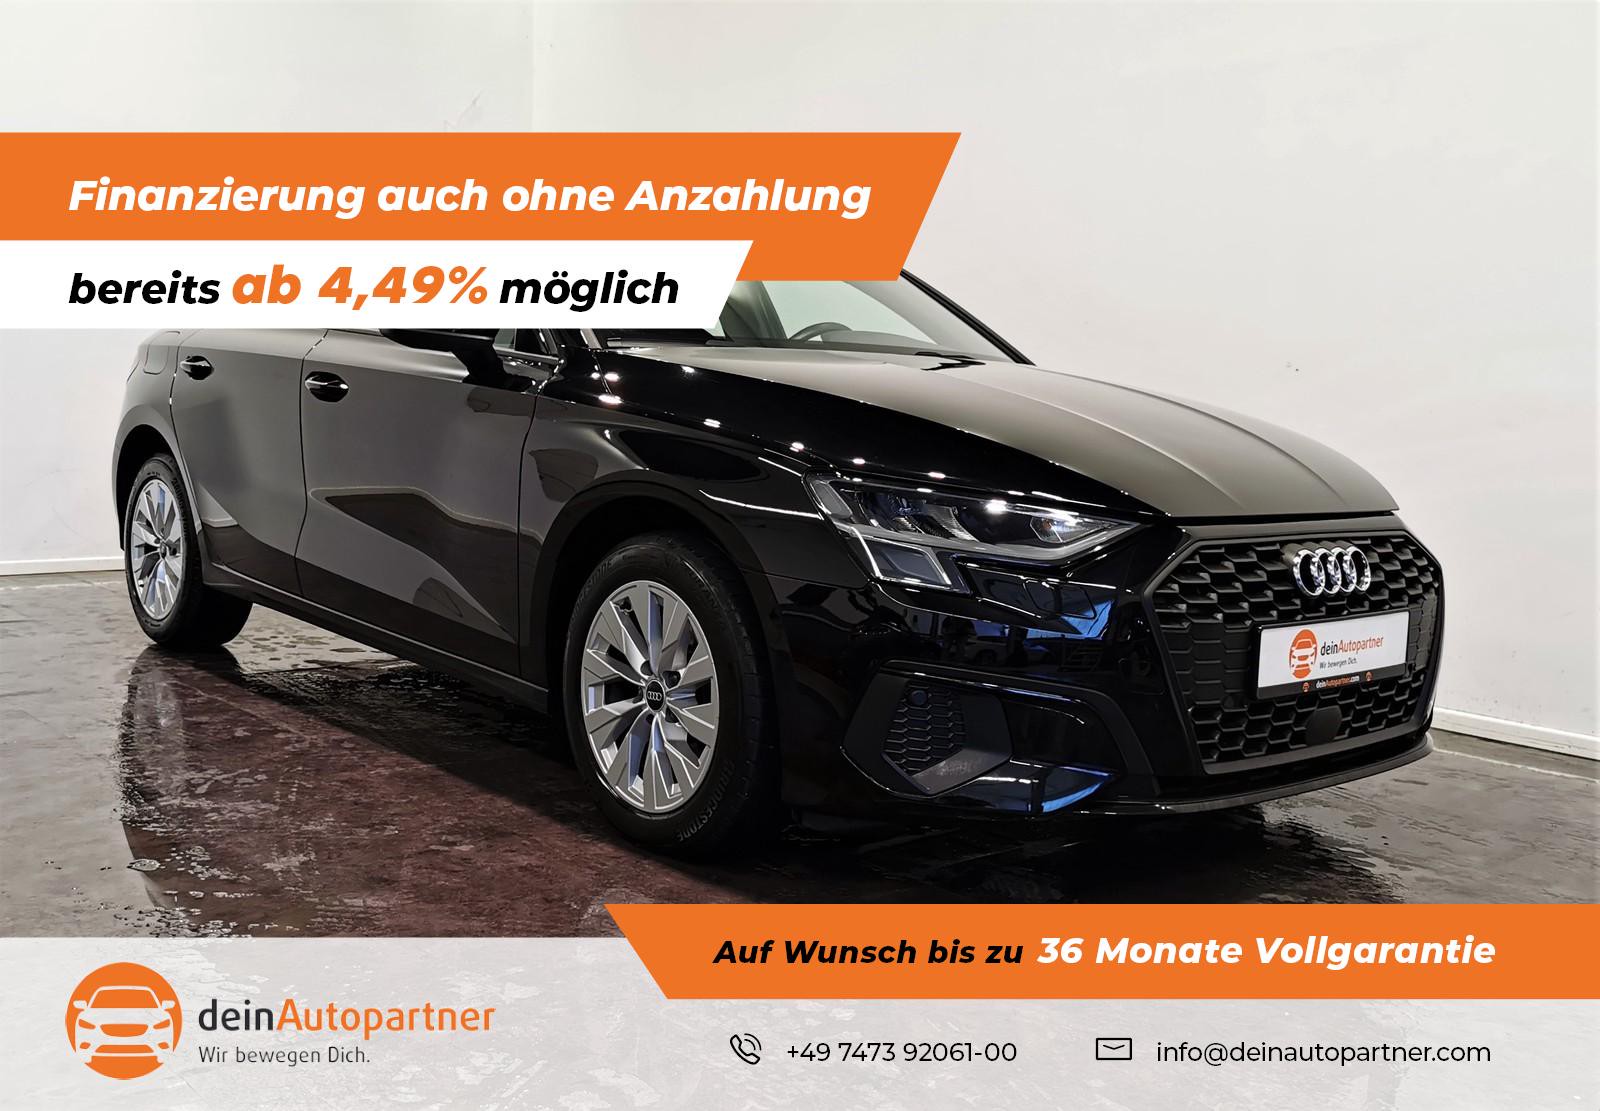 Audi A3 Sportback gebraucht kaufen in Mössingen Preis 23950 eur - Int.Nr.:  1642 VERKAUFT